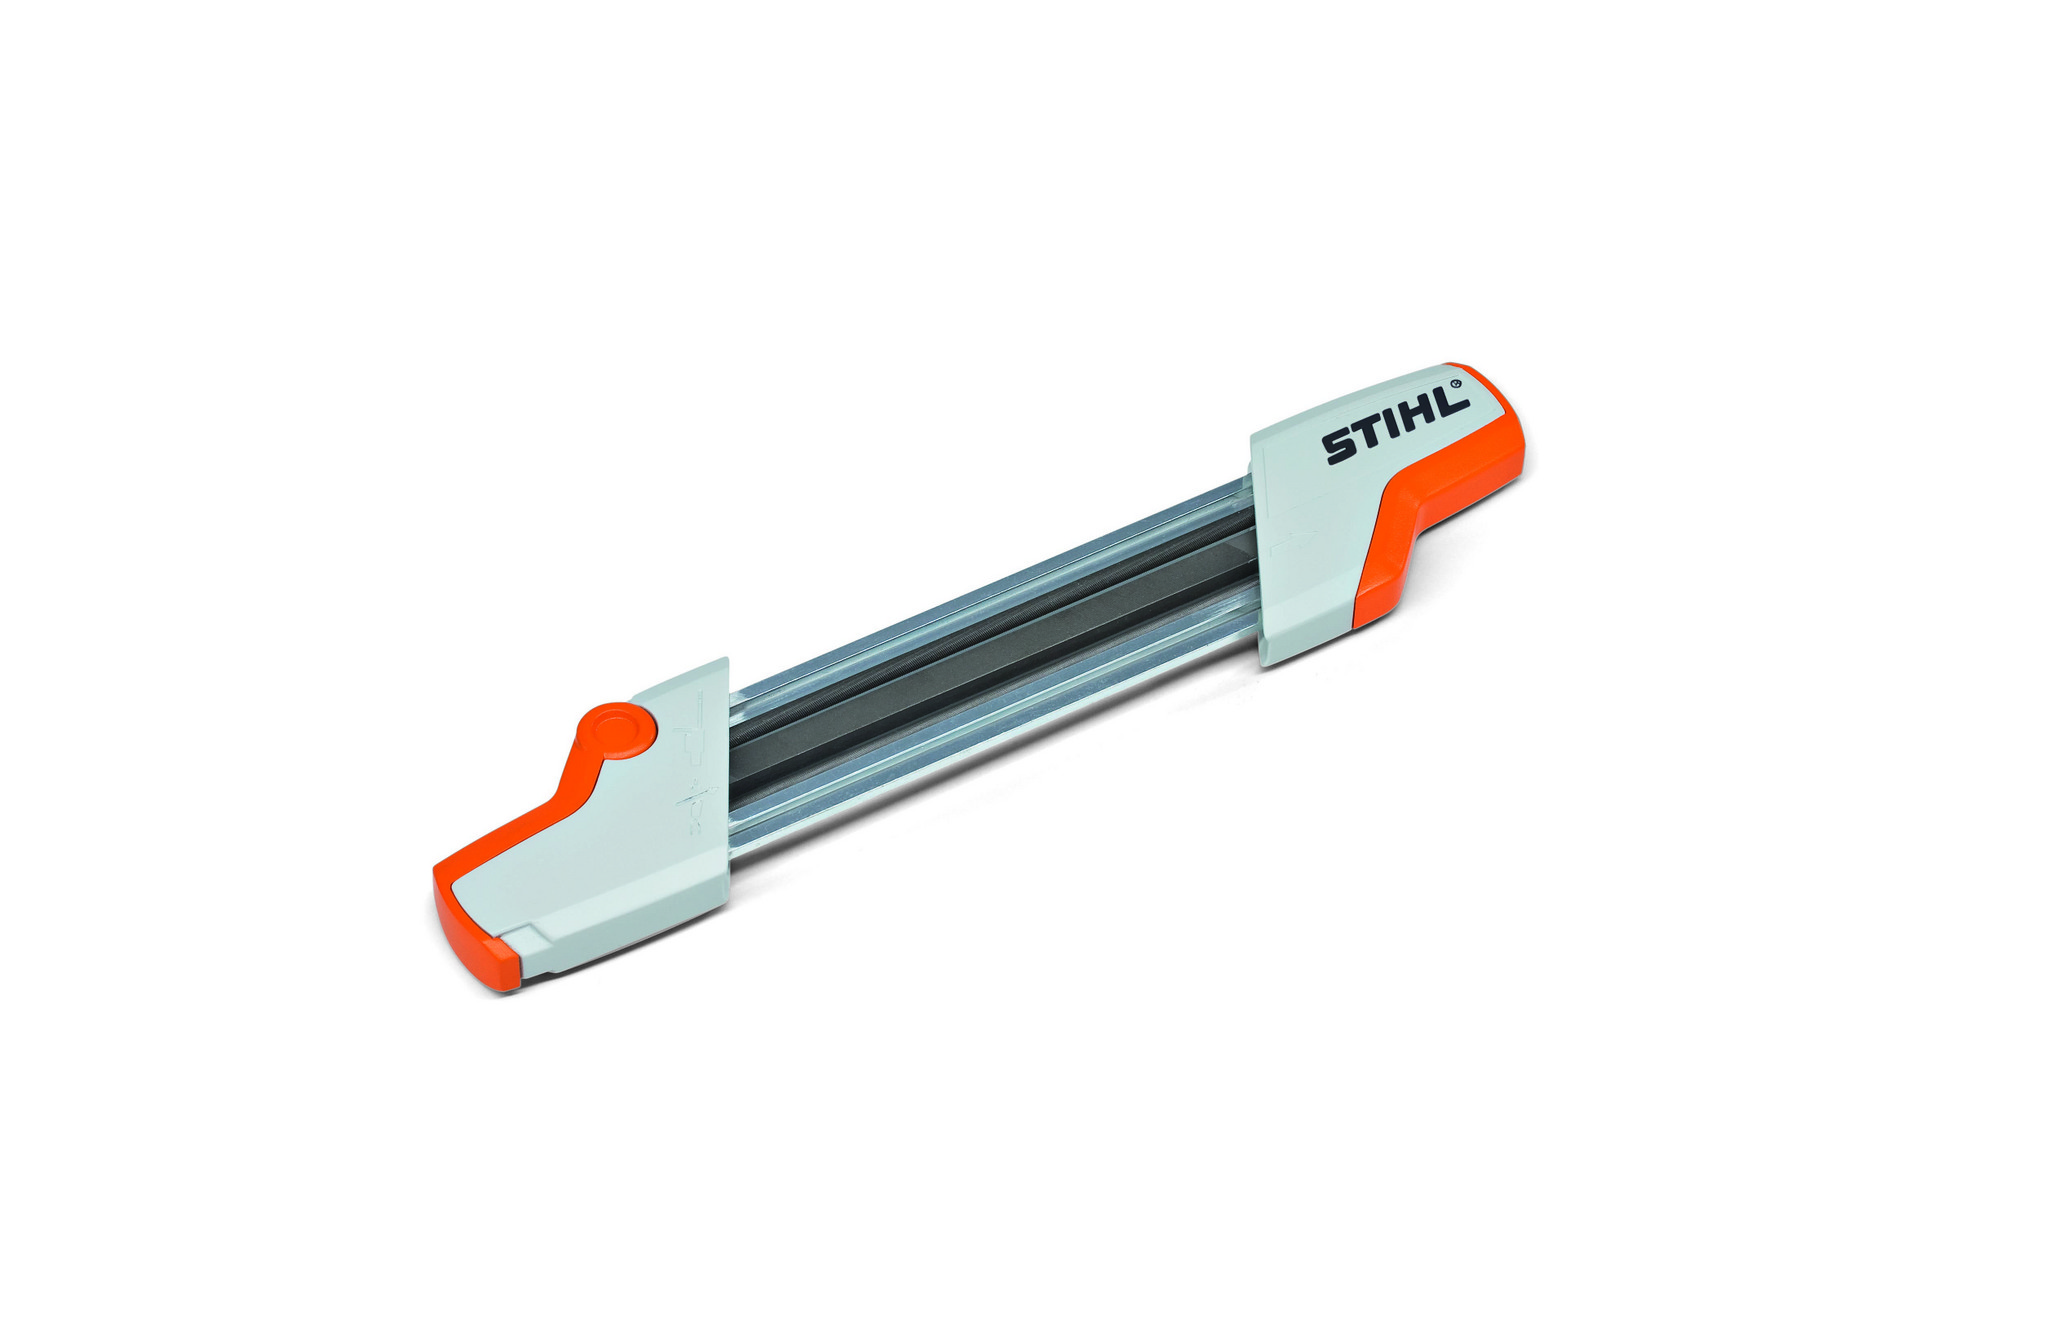 Заточное штиль. Напильник для заточки цепей бензопил Stihl. Заточное приспособление Stihl 0000-881-9801. Направляющая державка с напильником Stihl 4.0 мм, 3/8" РМ. Инструмент для заточки цепи бензопилы Stihl.